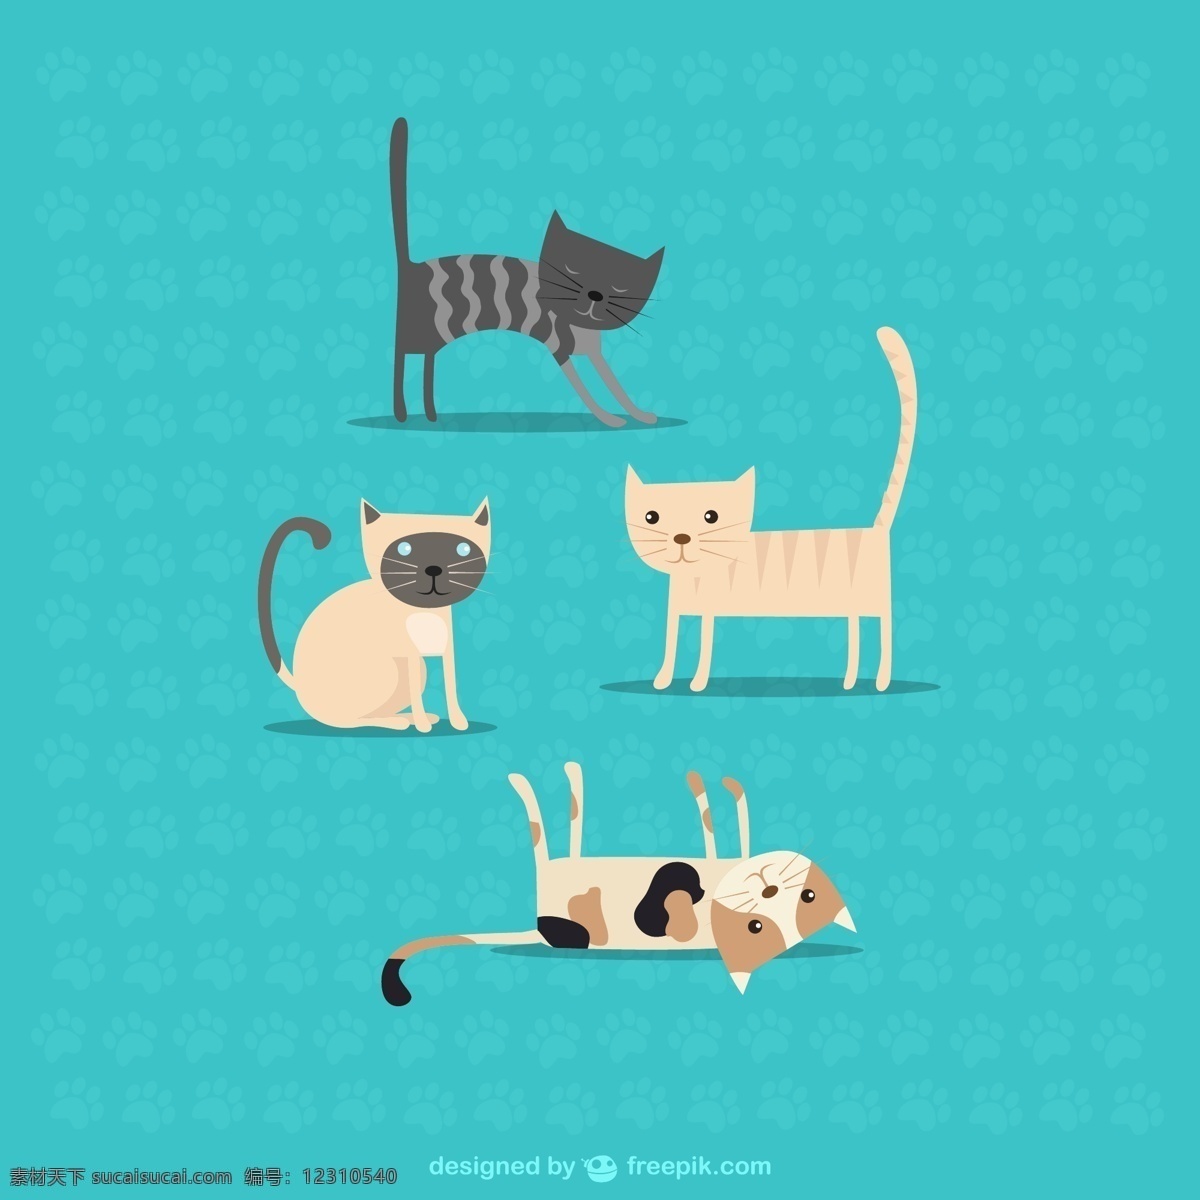 可爱宠物猫咪 可爱 宠物 猫咪 小猫 猫 动物 插画 脚印 背景 海报 画册 矢量动物 生物世界 家禽家畜